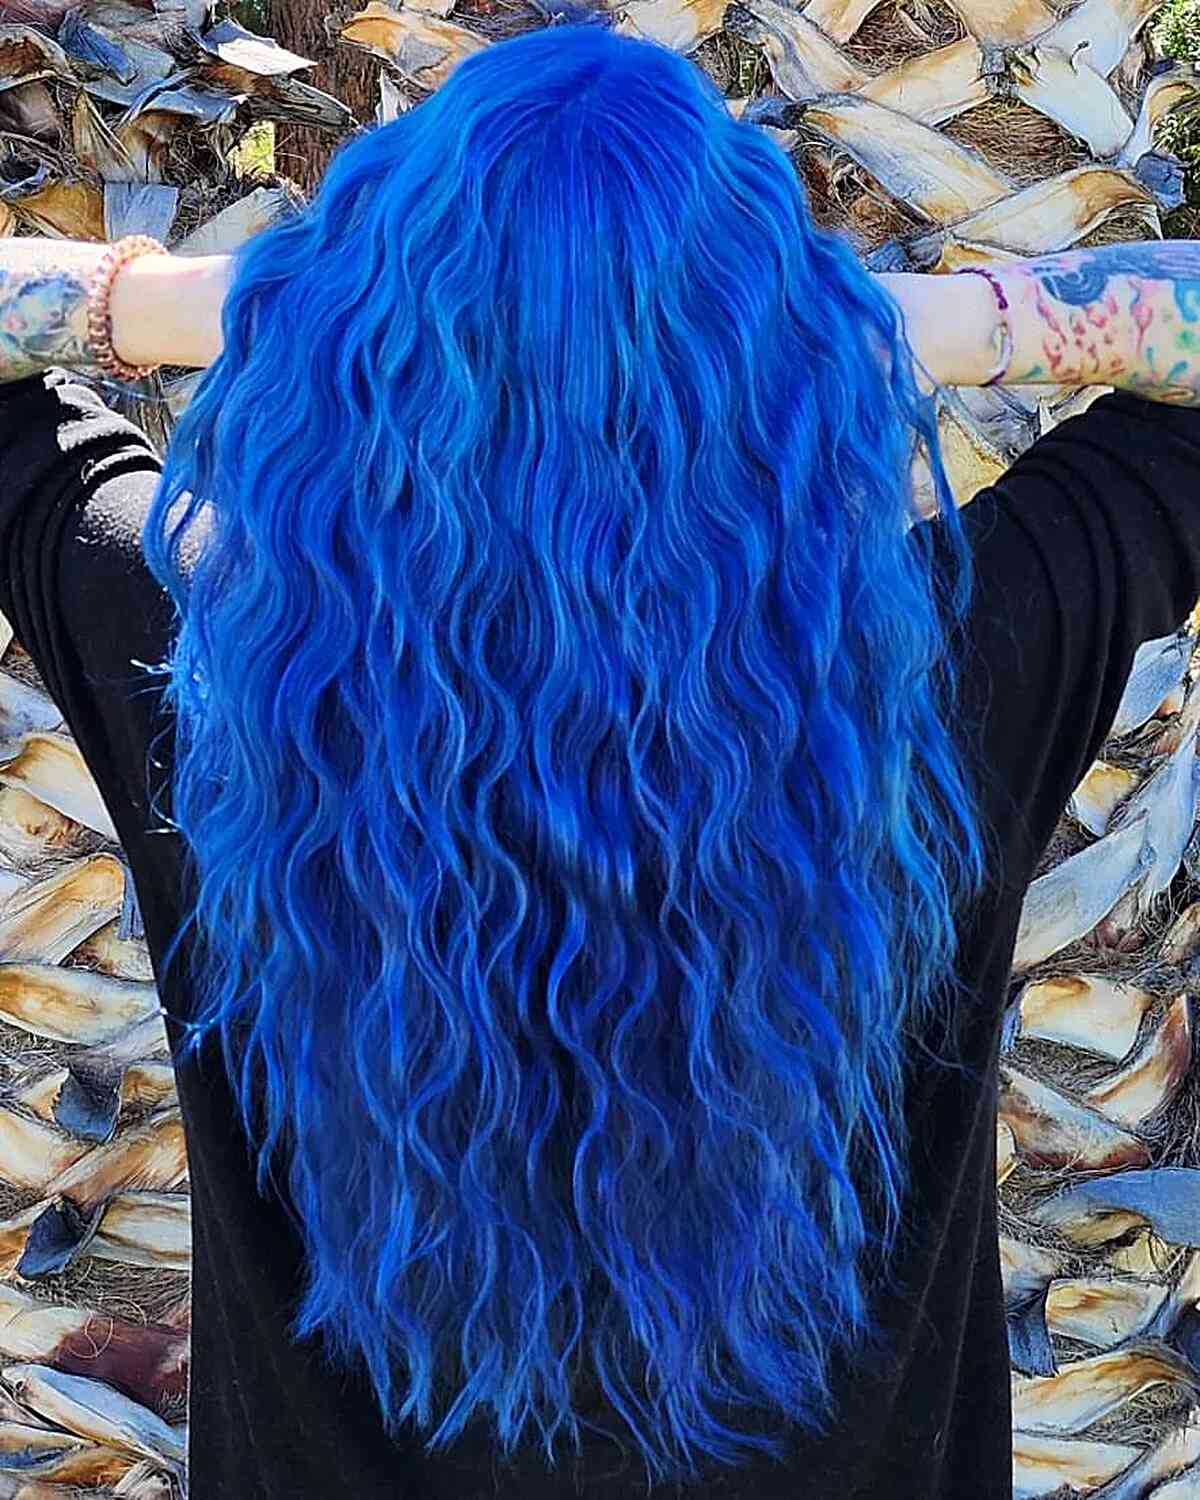 Cabelo azul sexy com ondas de sereia para mulheres com cabelos compridos